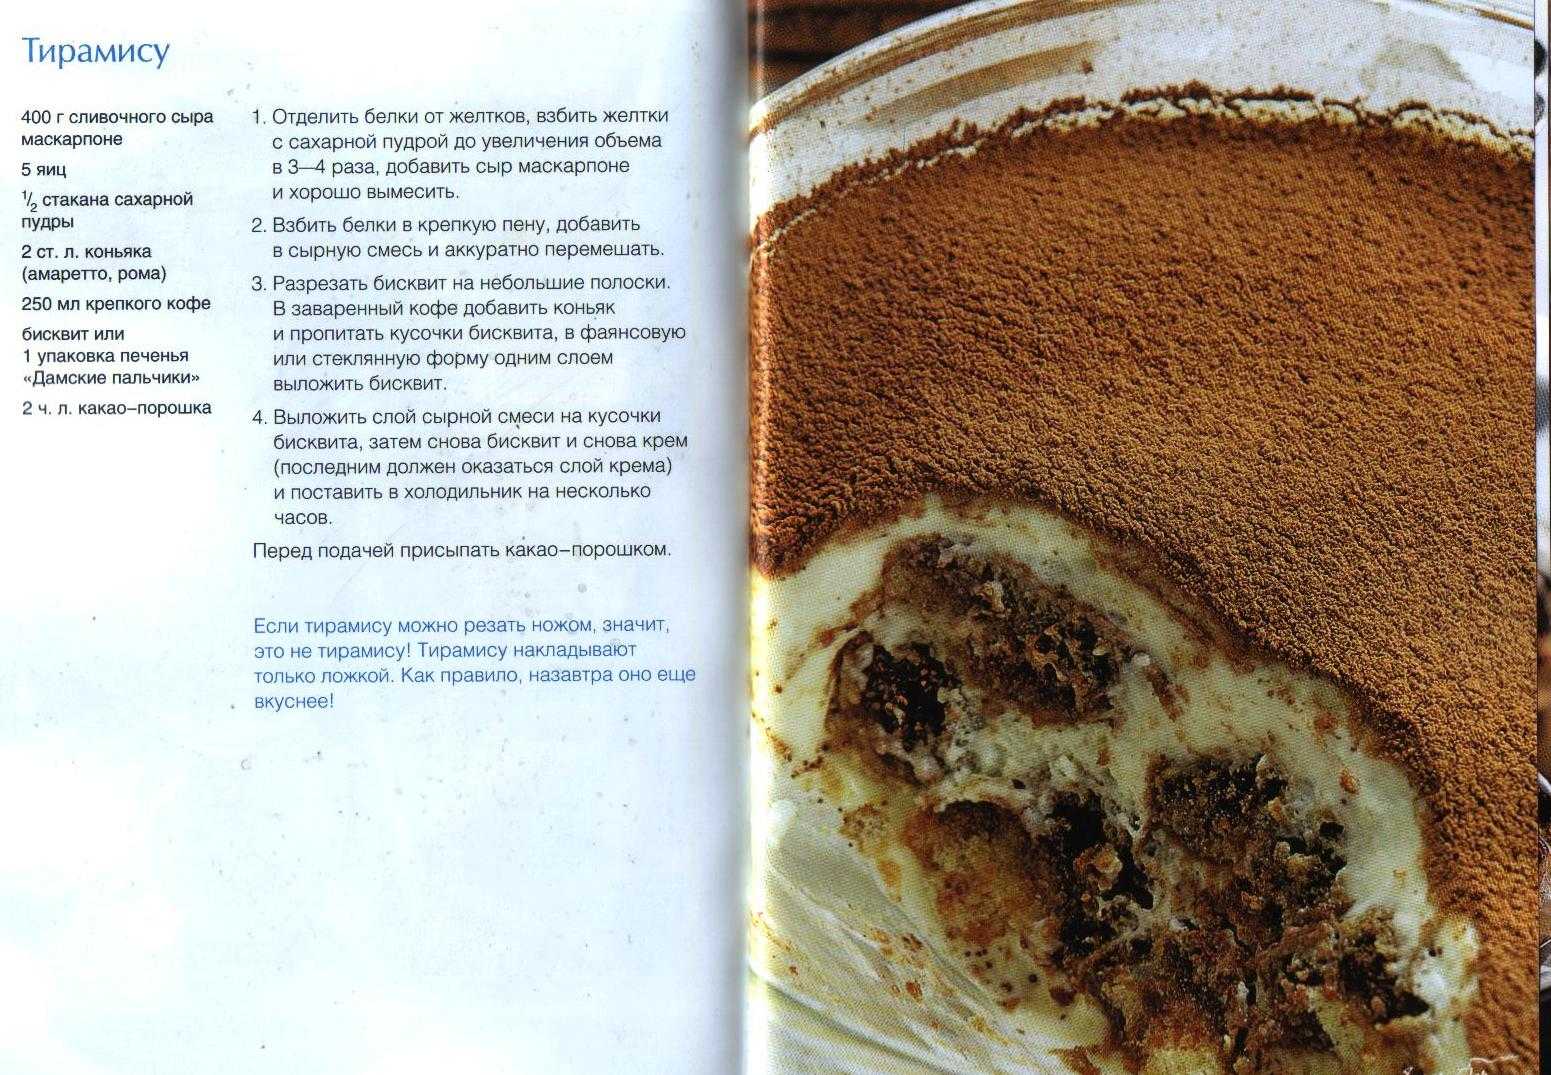 Десерт тирамису рецепт классический от Юлии Высоцкой с пошаговыми фото и видео